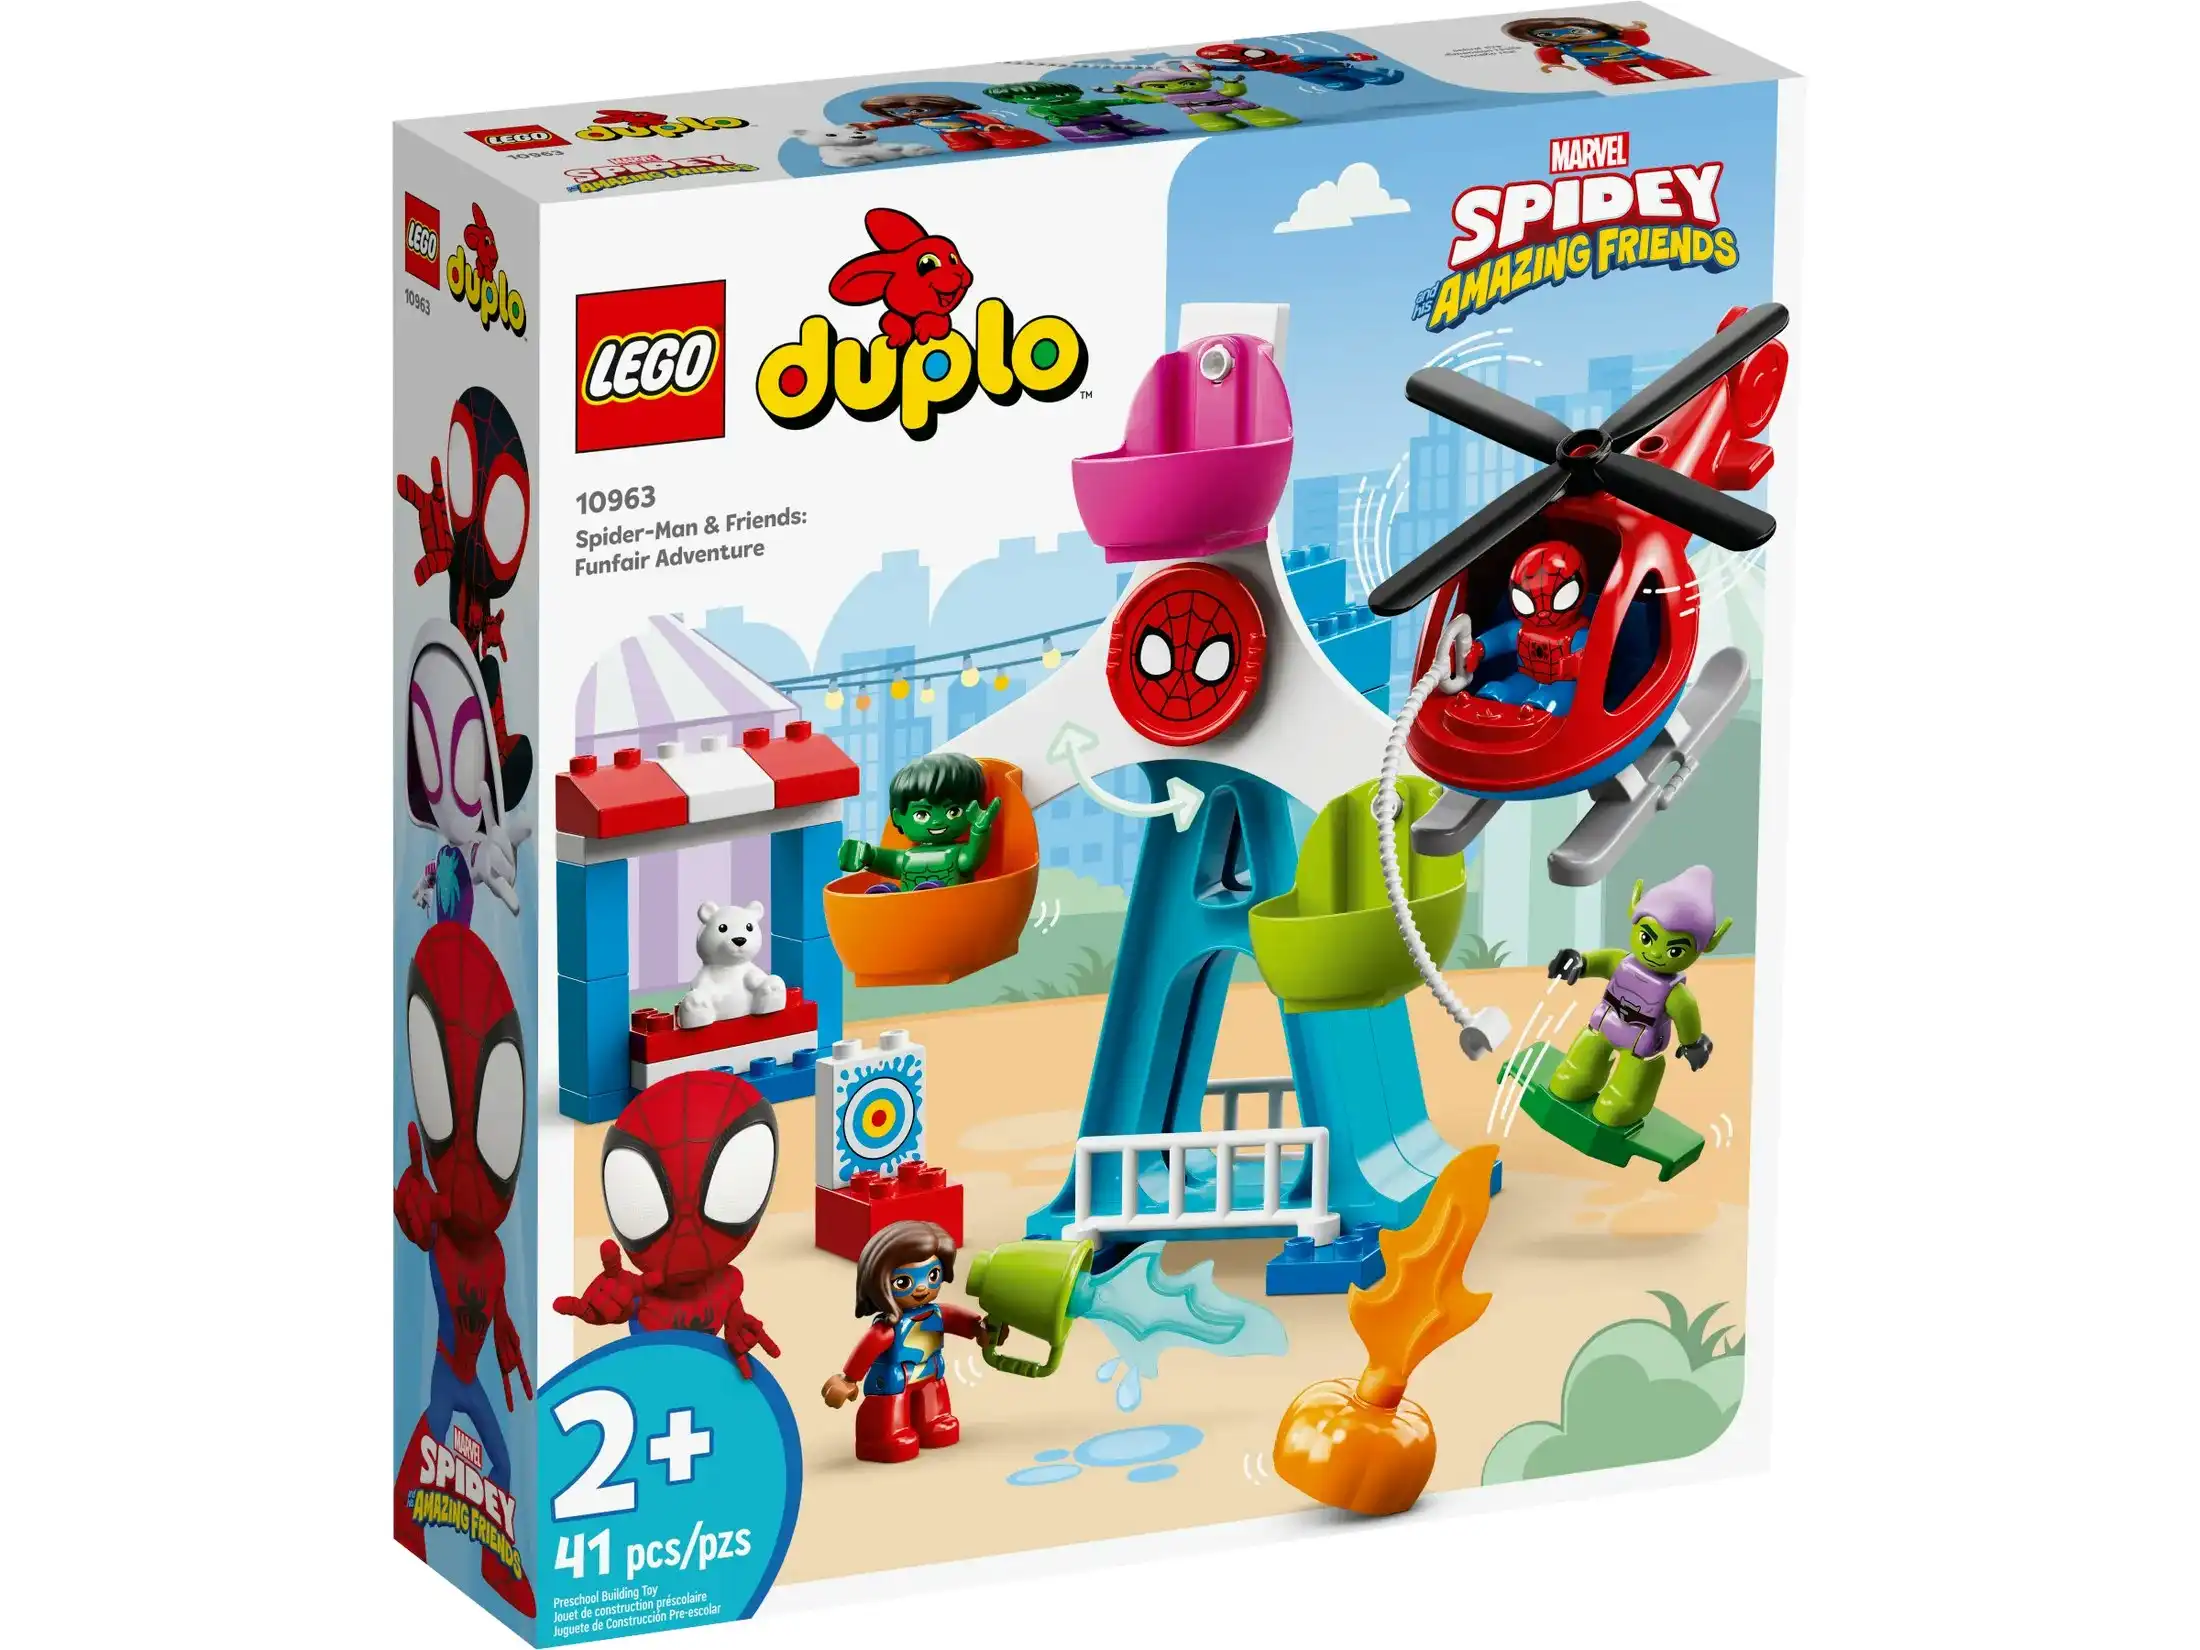 LEGO 10963 Spider-Man & Friends: Funfair Adventure - Duplo